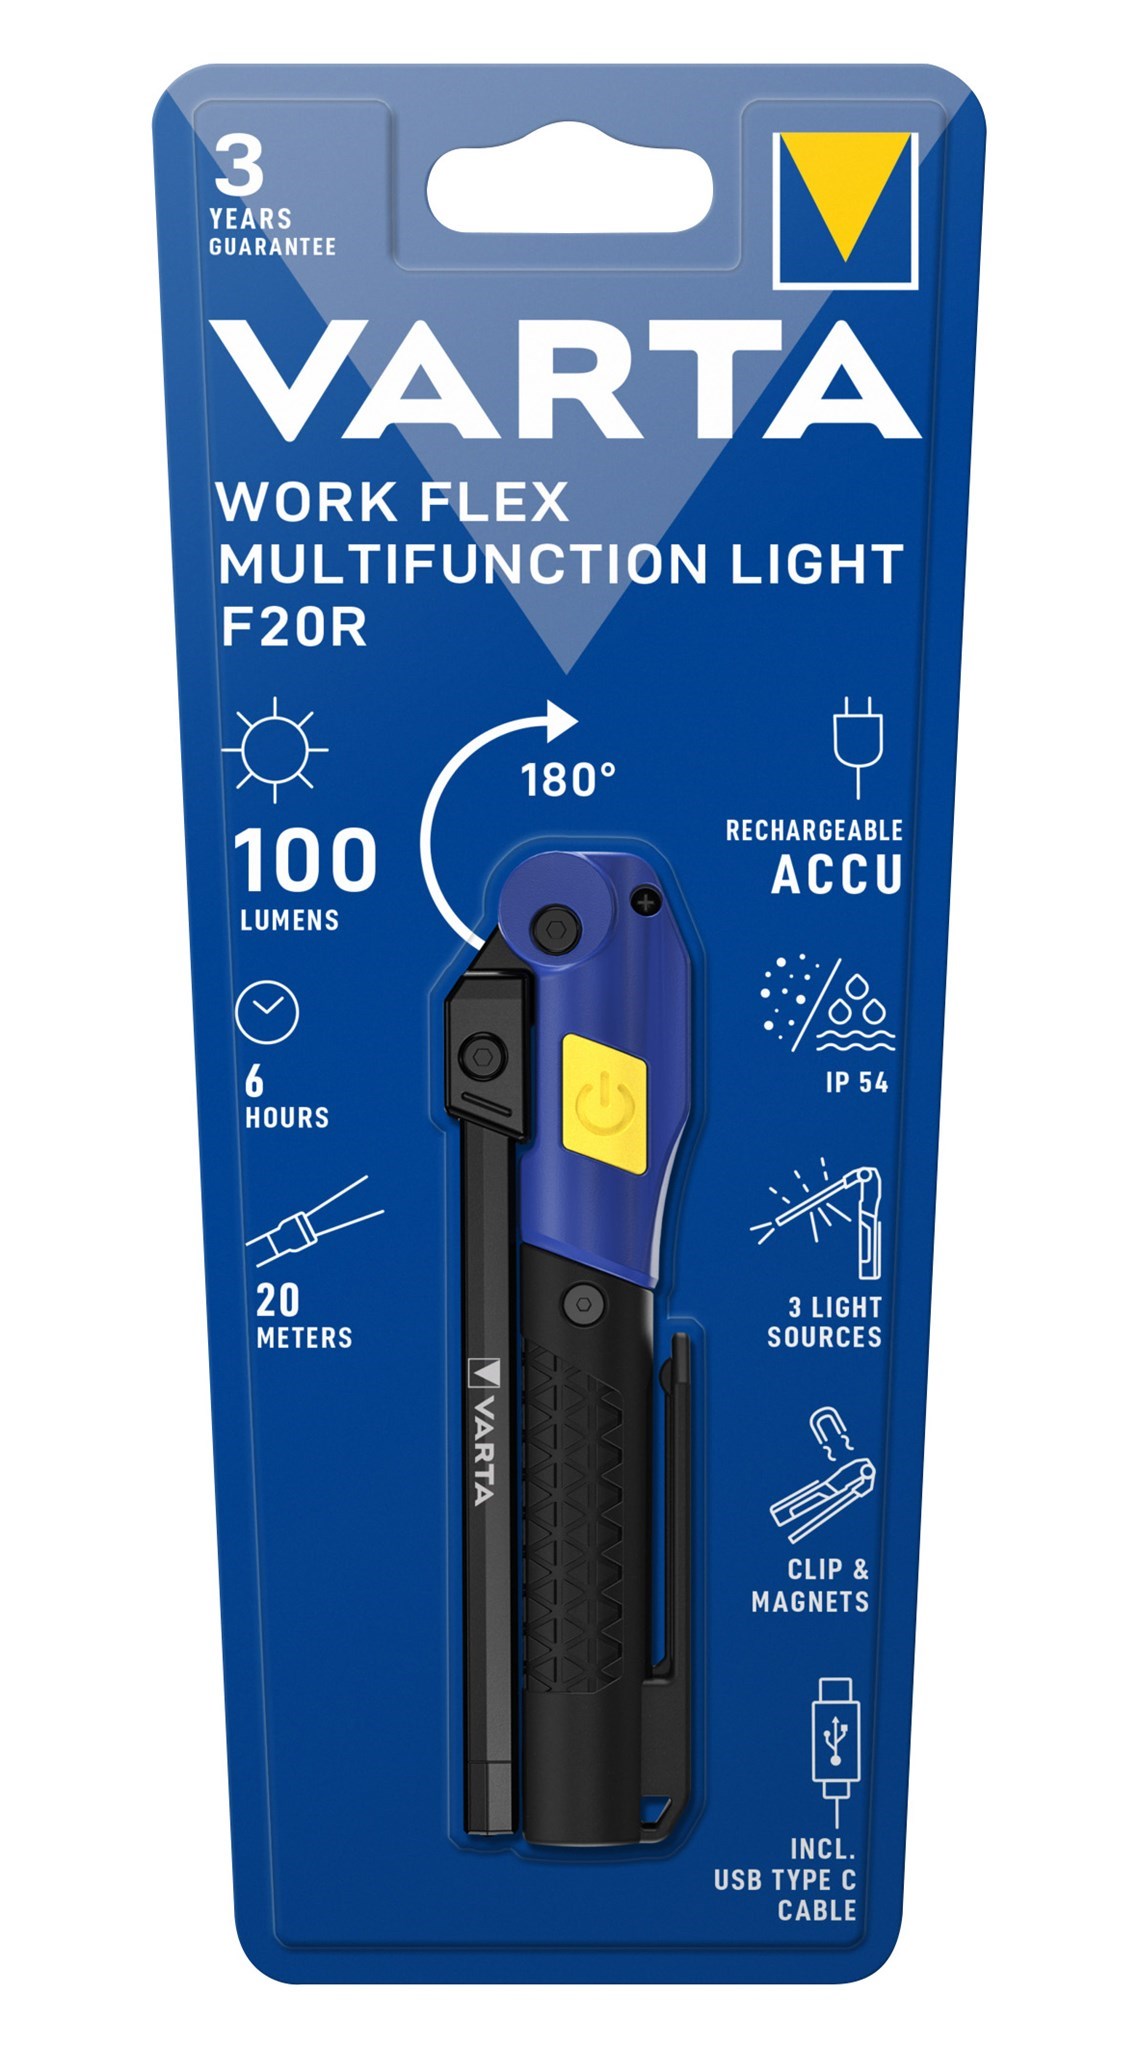 Bild von VARTA Work Flex Multifunction Light F20R inkl. 1x Li-Ionen Akku